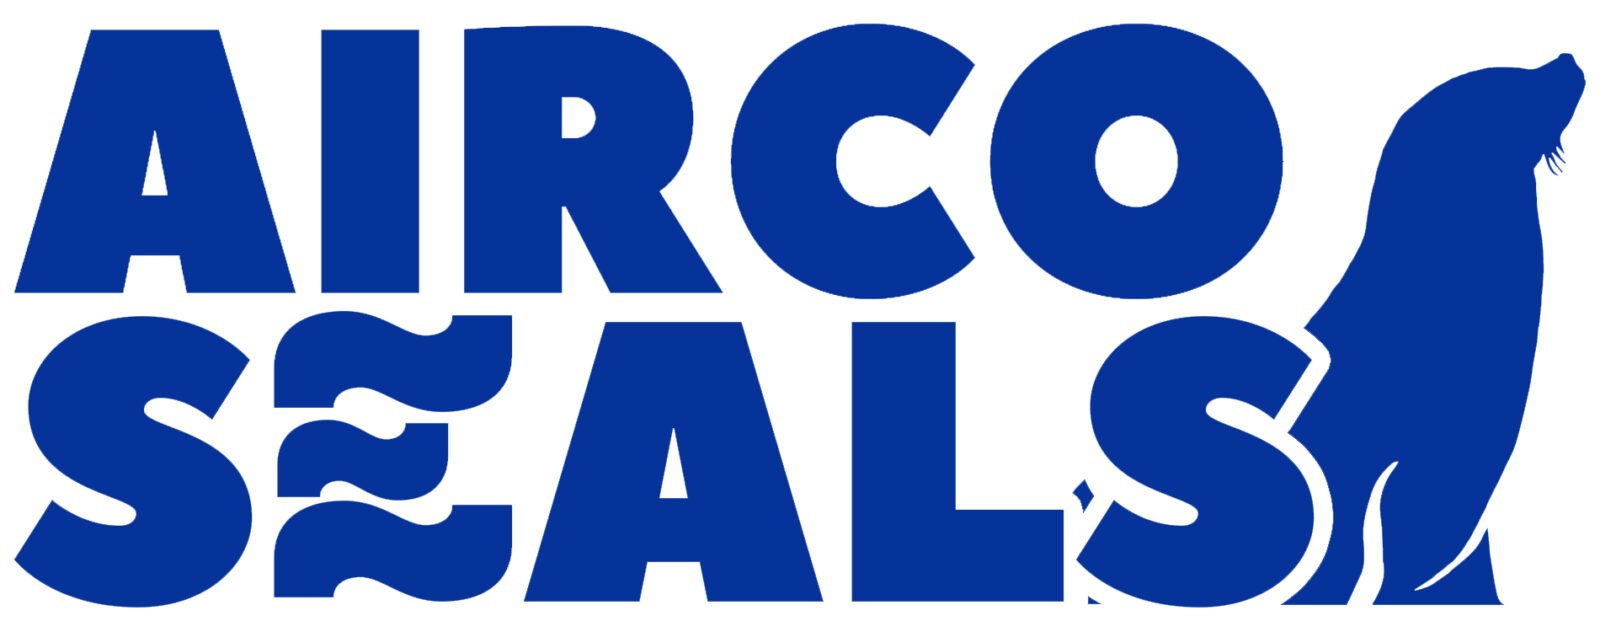 Airco Seals